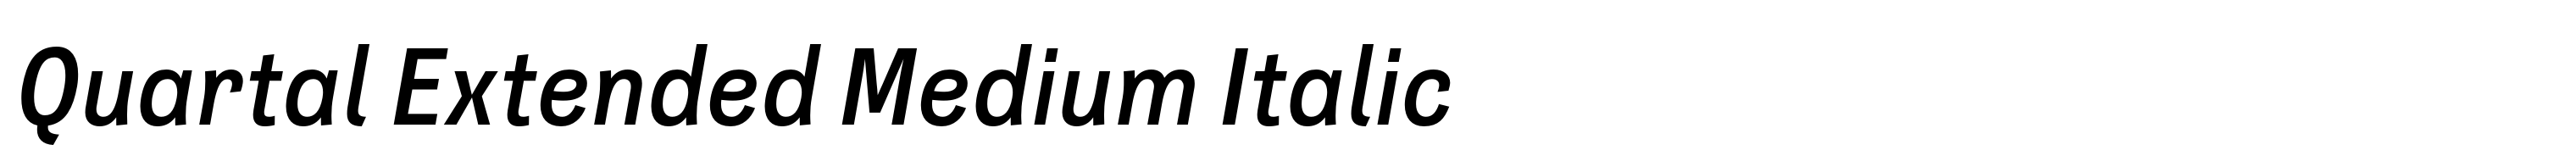 Quartal Extended Medium Italic